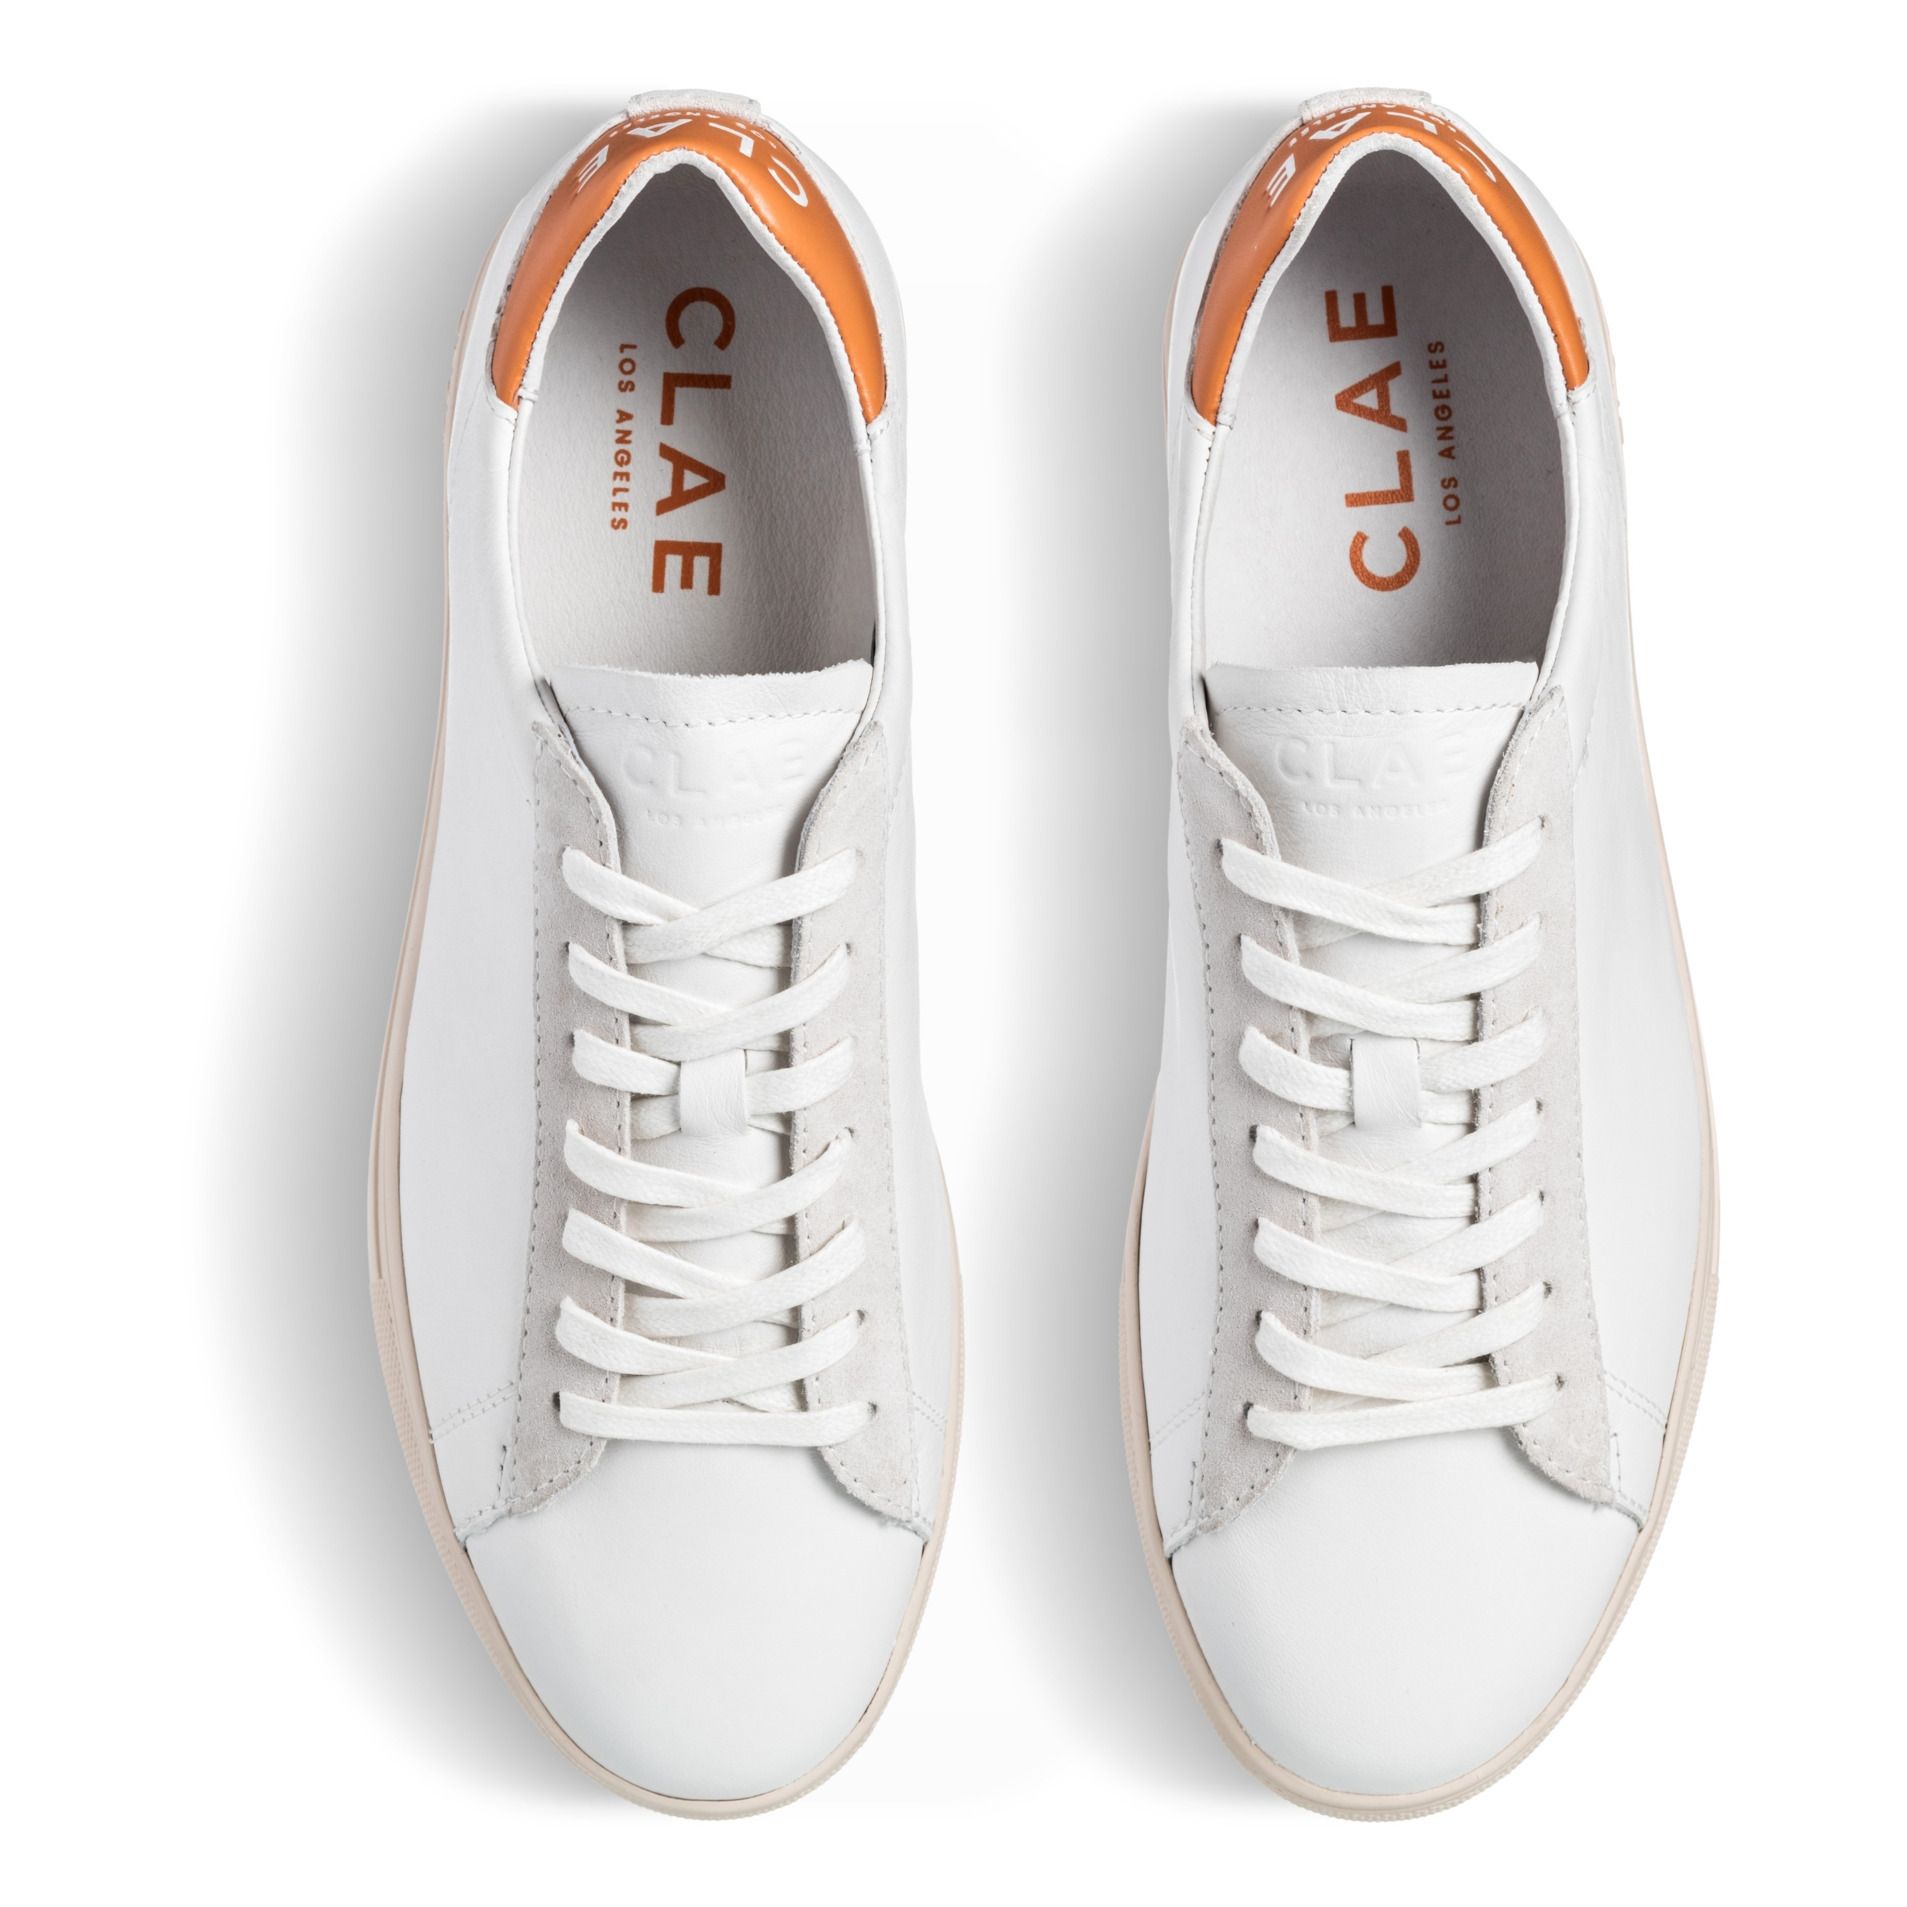 Bradley California Sneakers Orange- Product image n°2